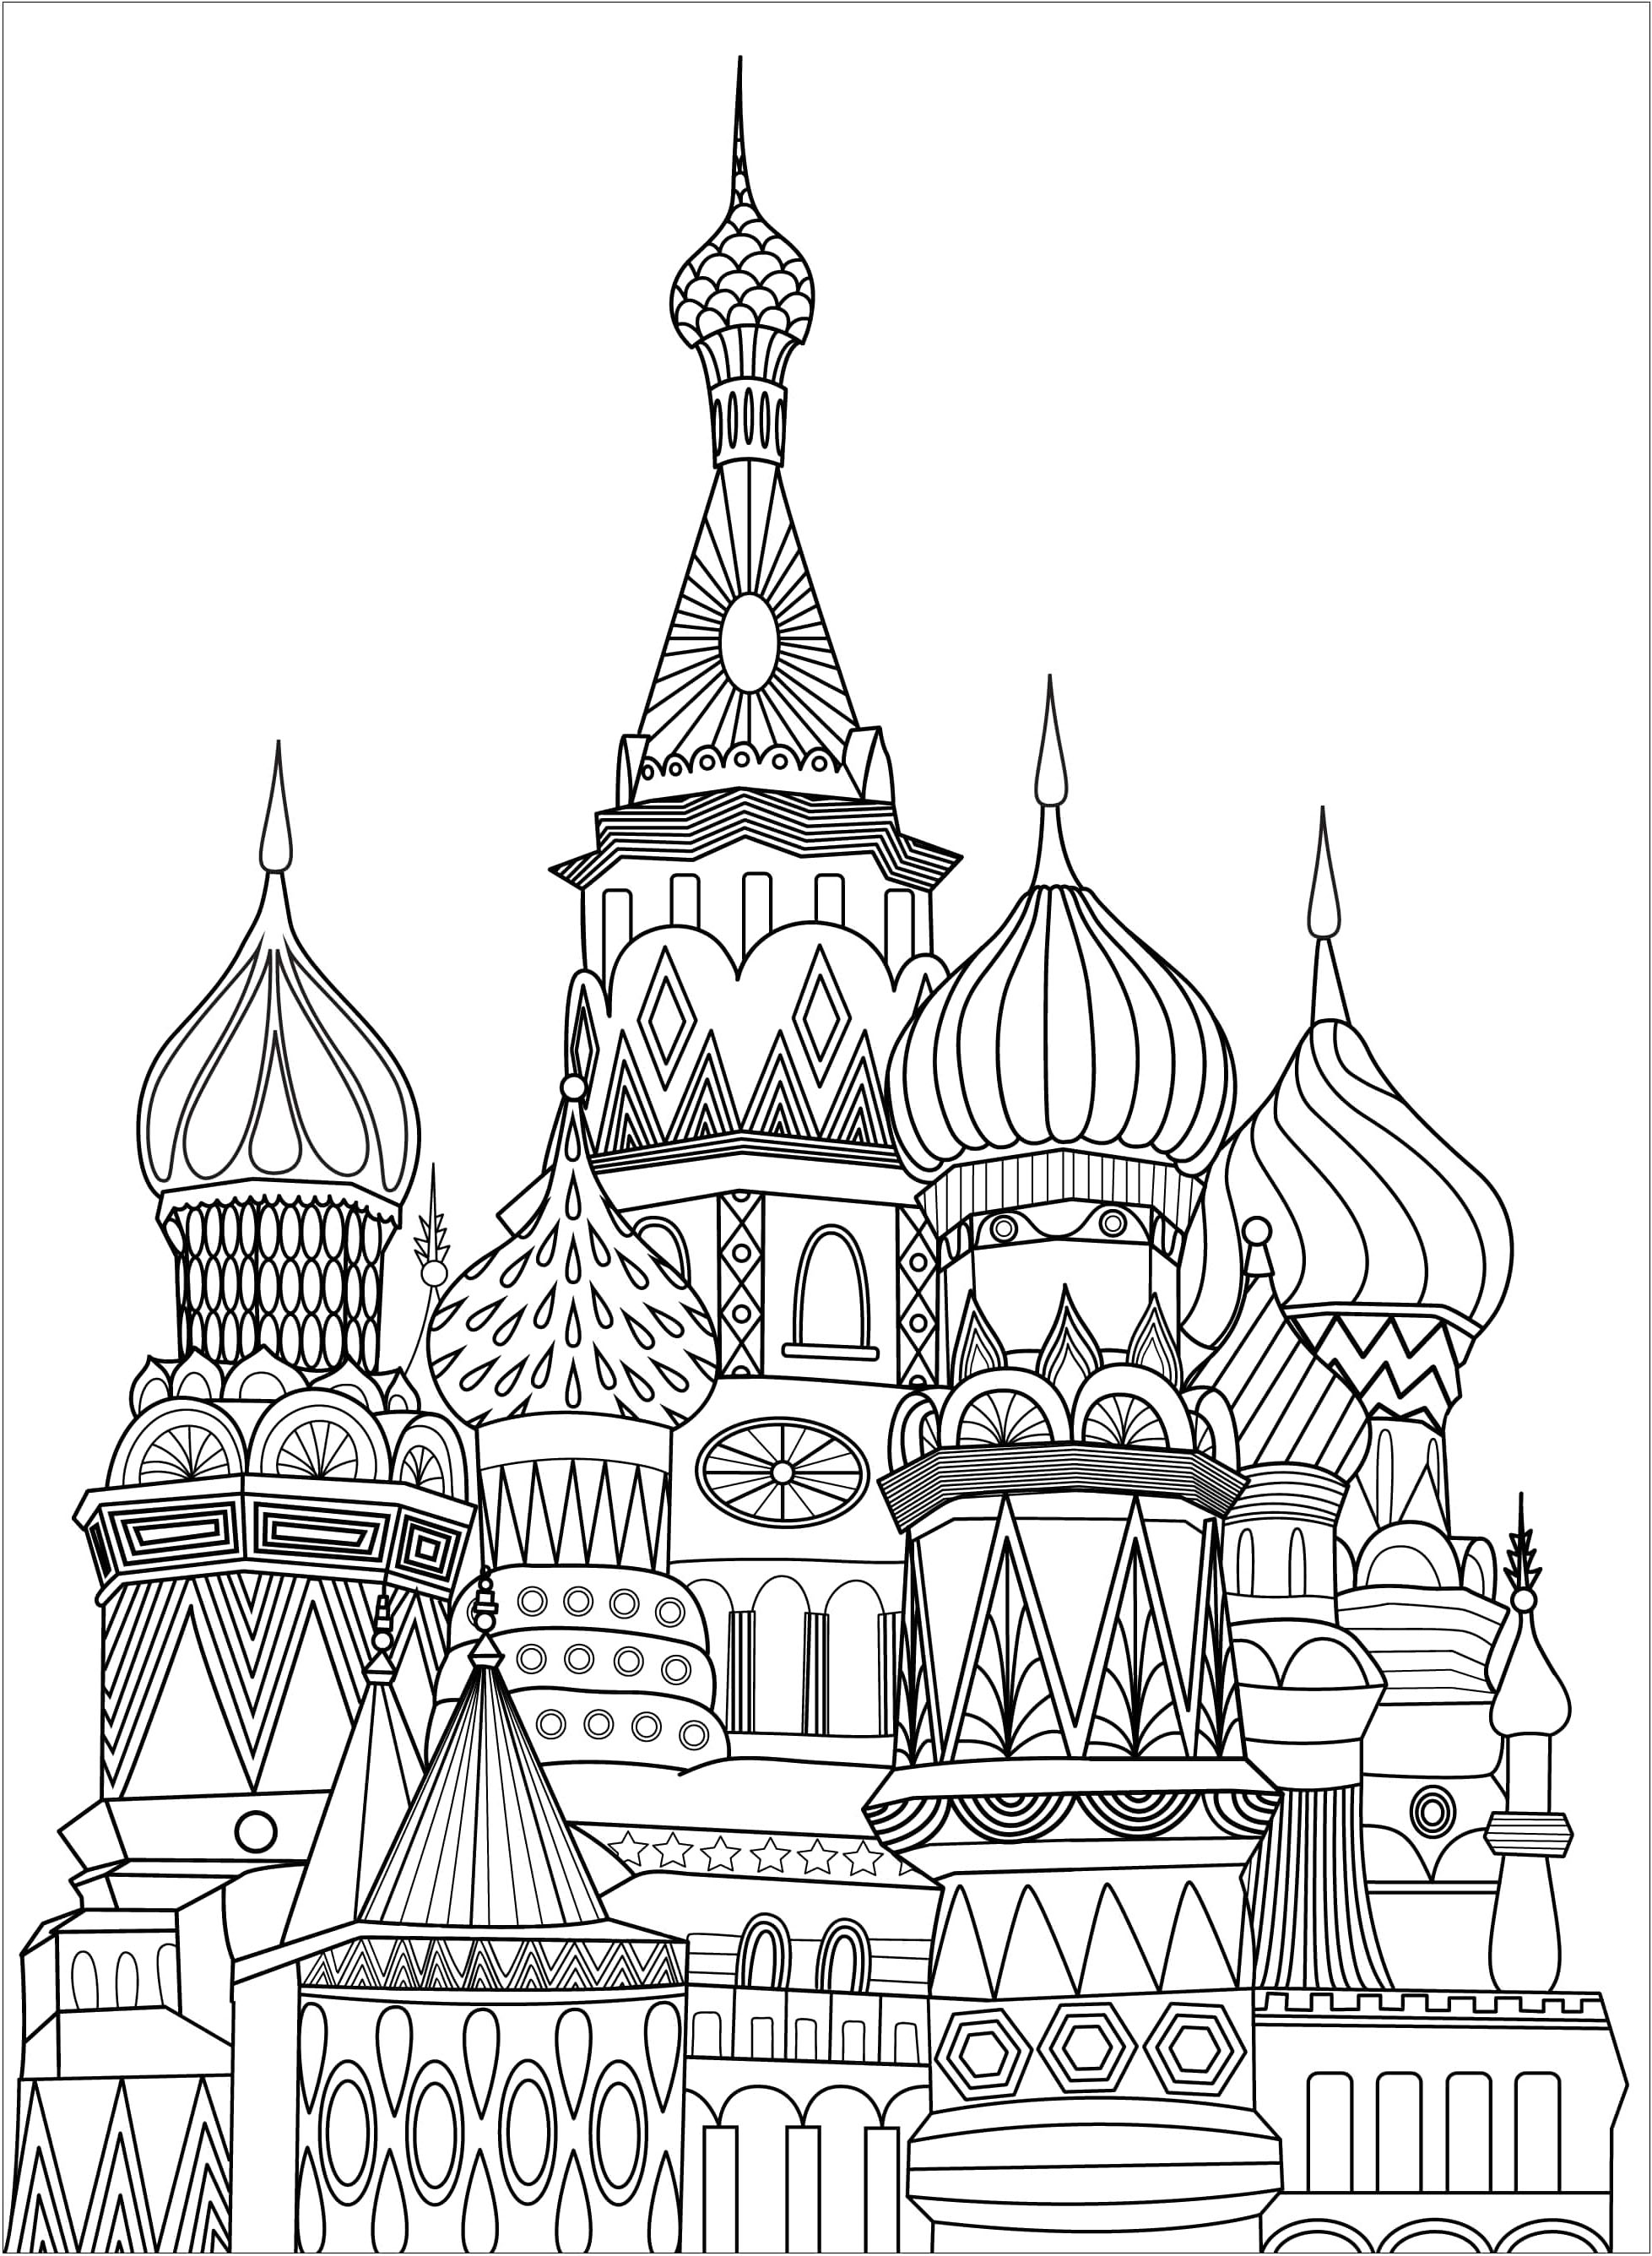 Colorir a famosa Praça Vermelha em Moscovo, Rússia. A Praça Vermelha é um marco da capital russa, conhecida pelos seus edifícios grandiosos e monumentos famosos, como a Catedral de São Basílio e o Kremlin.